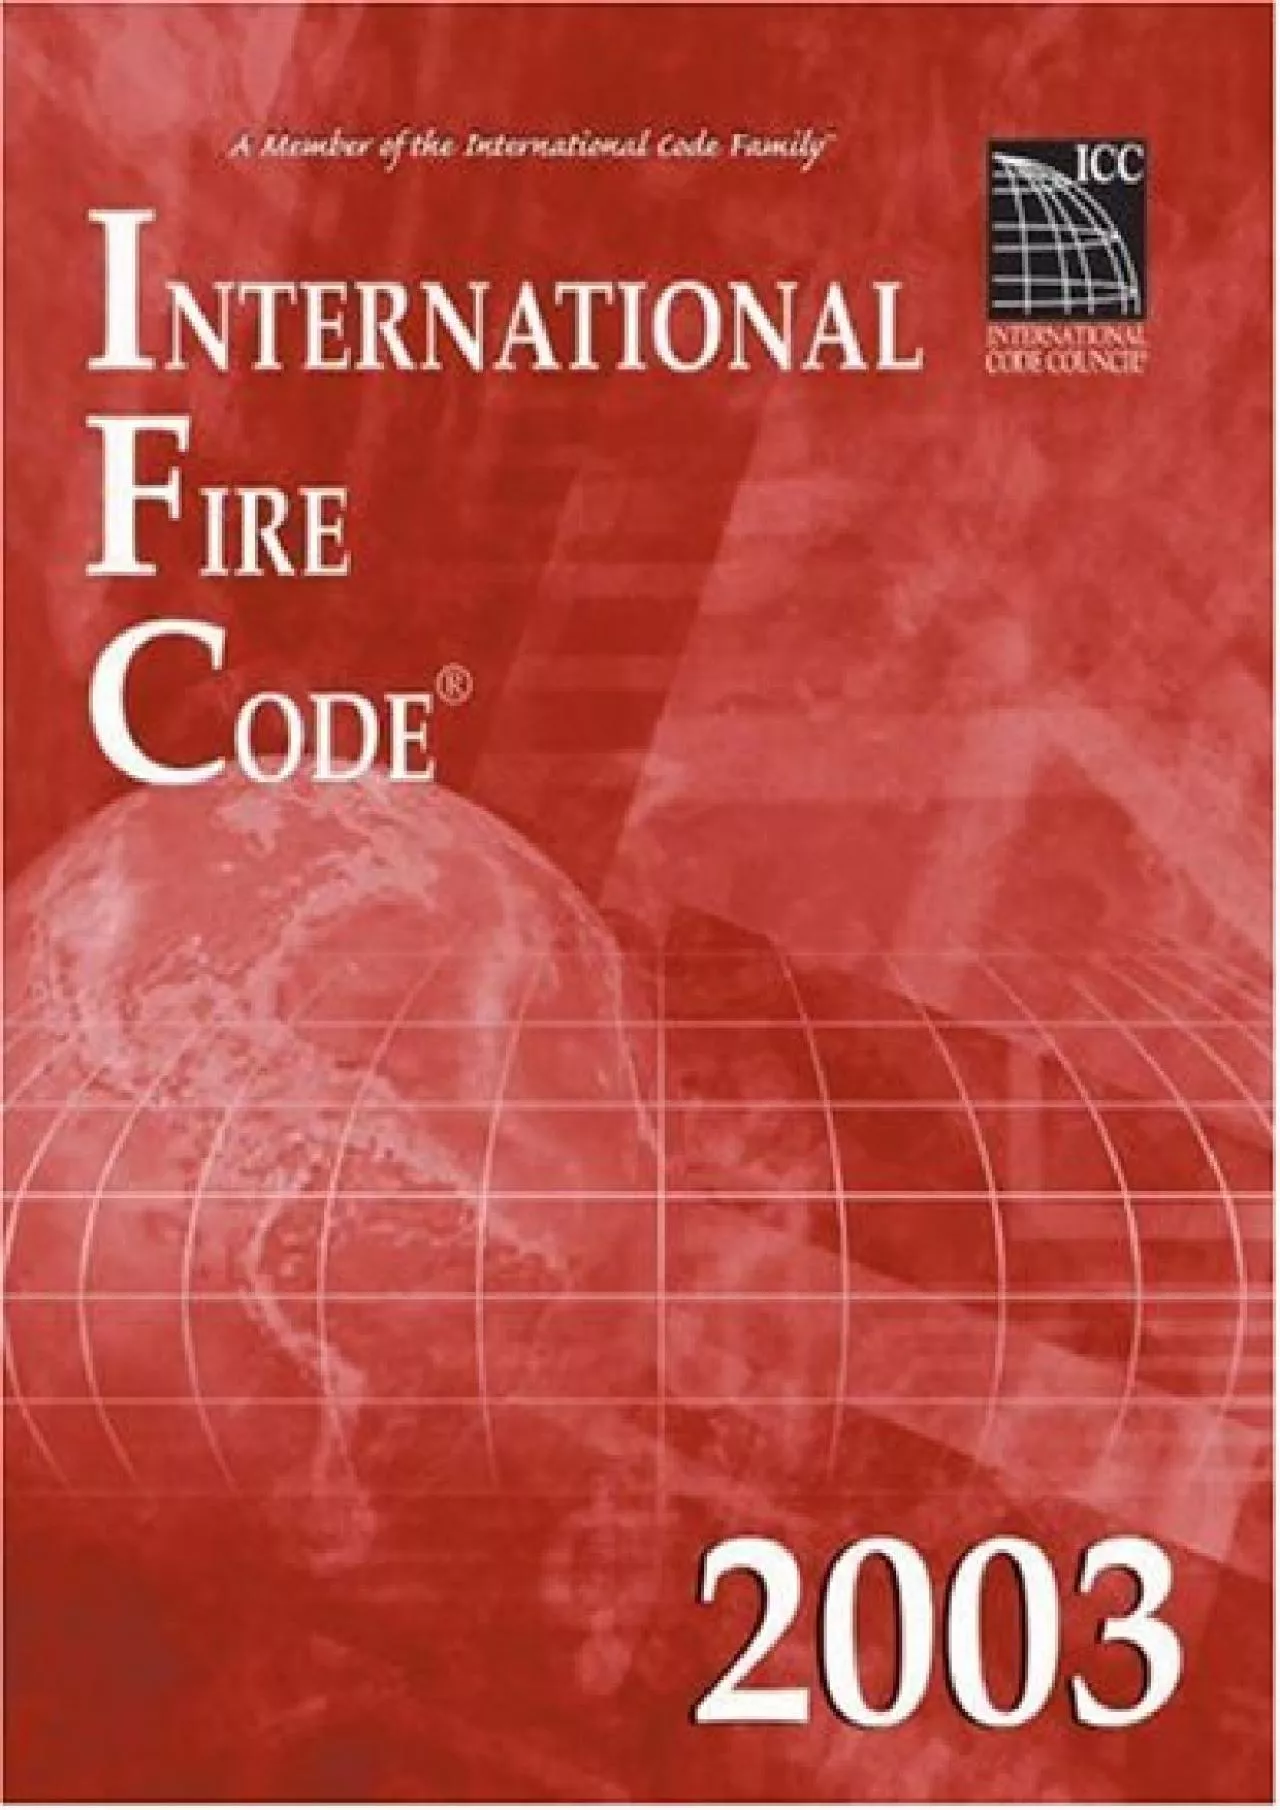 [PDF READ ONLINE] International Fire Code 2003 (International Code Council Series)